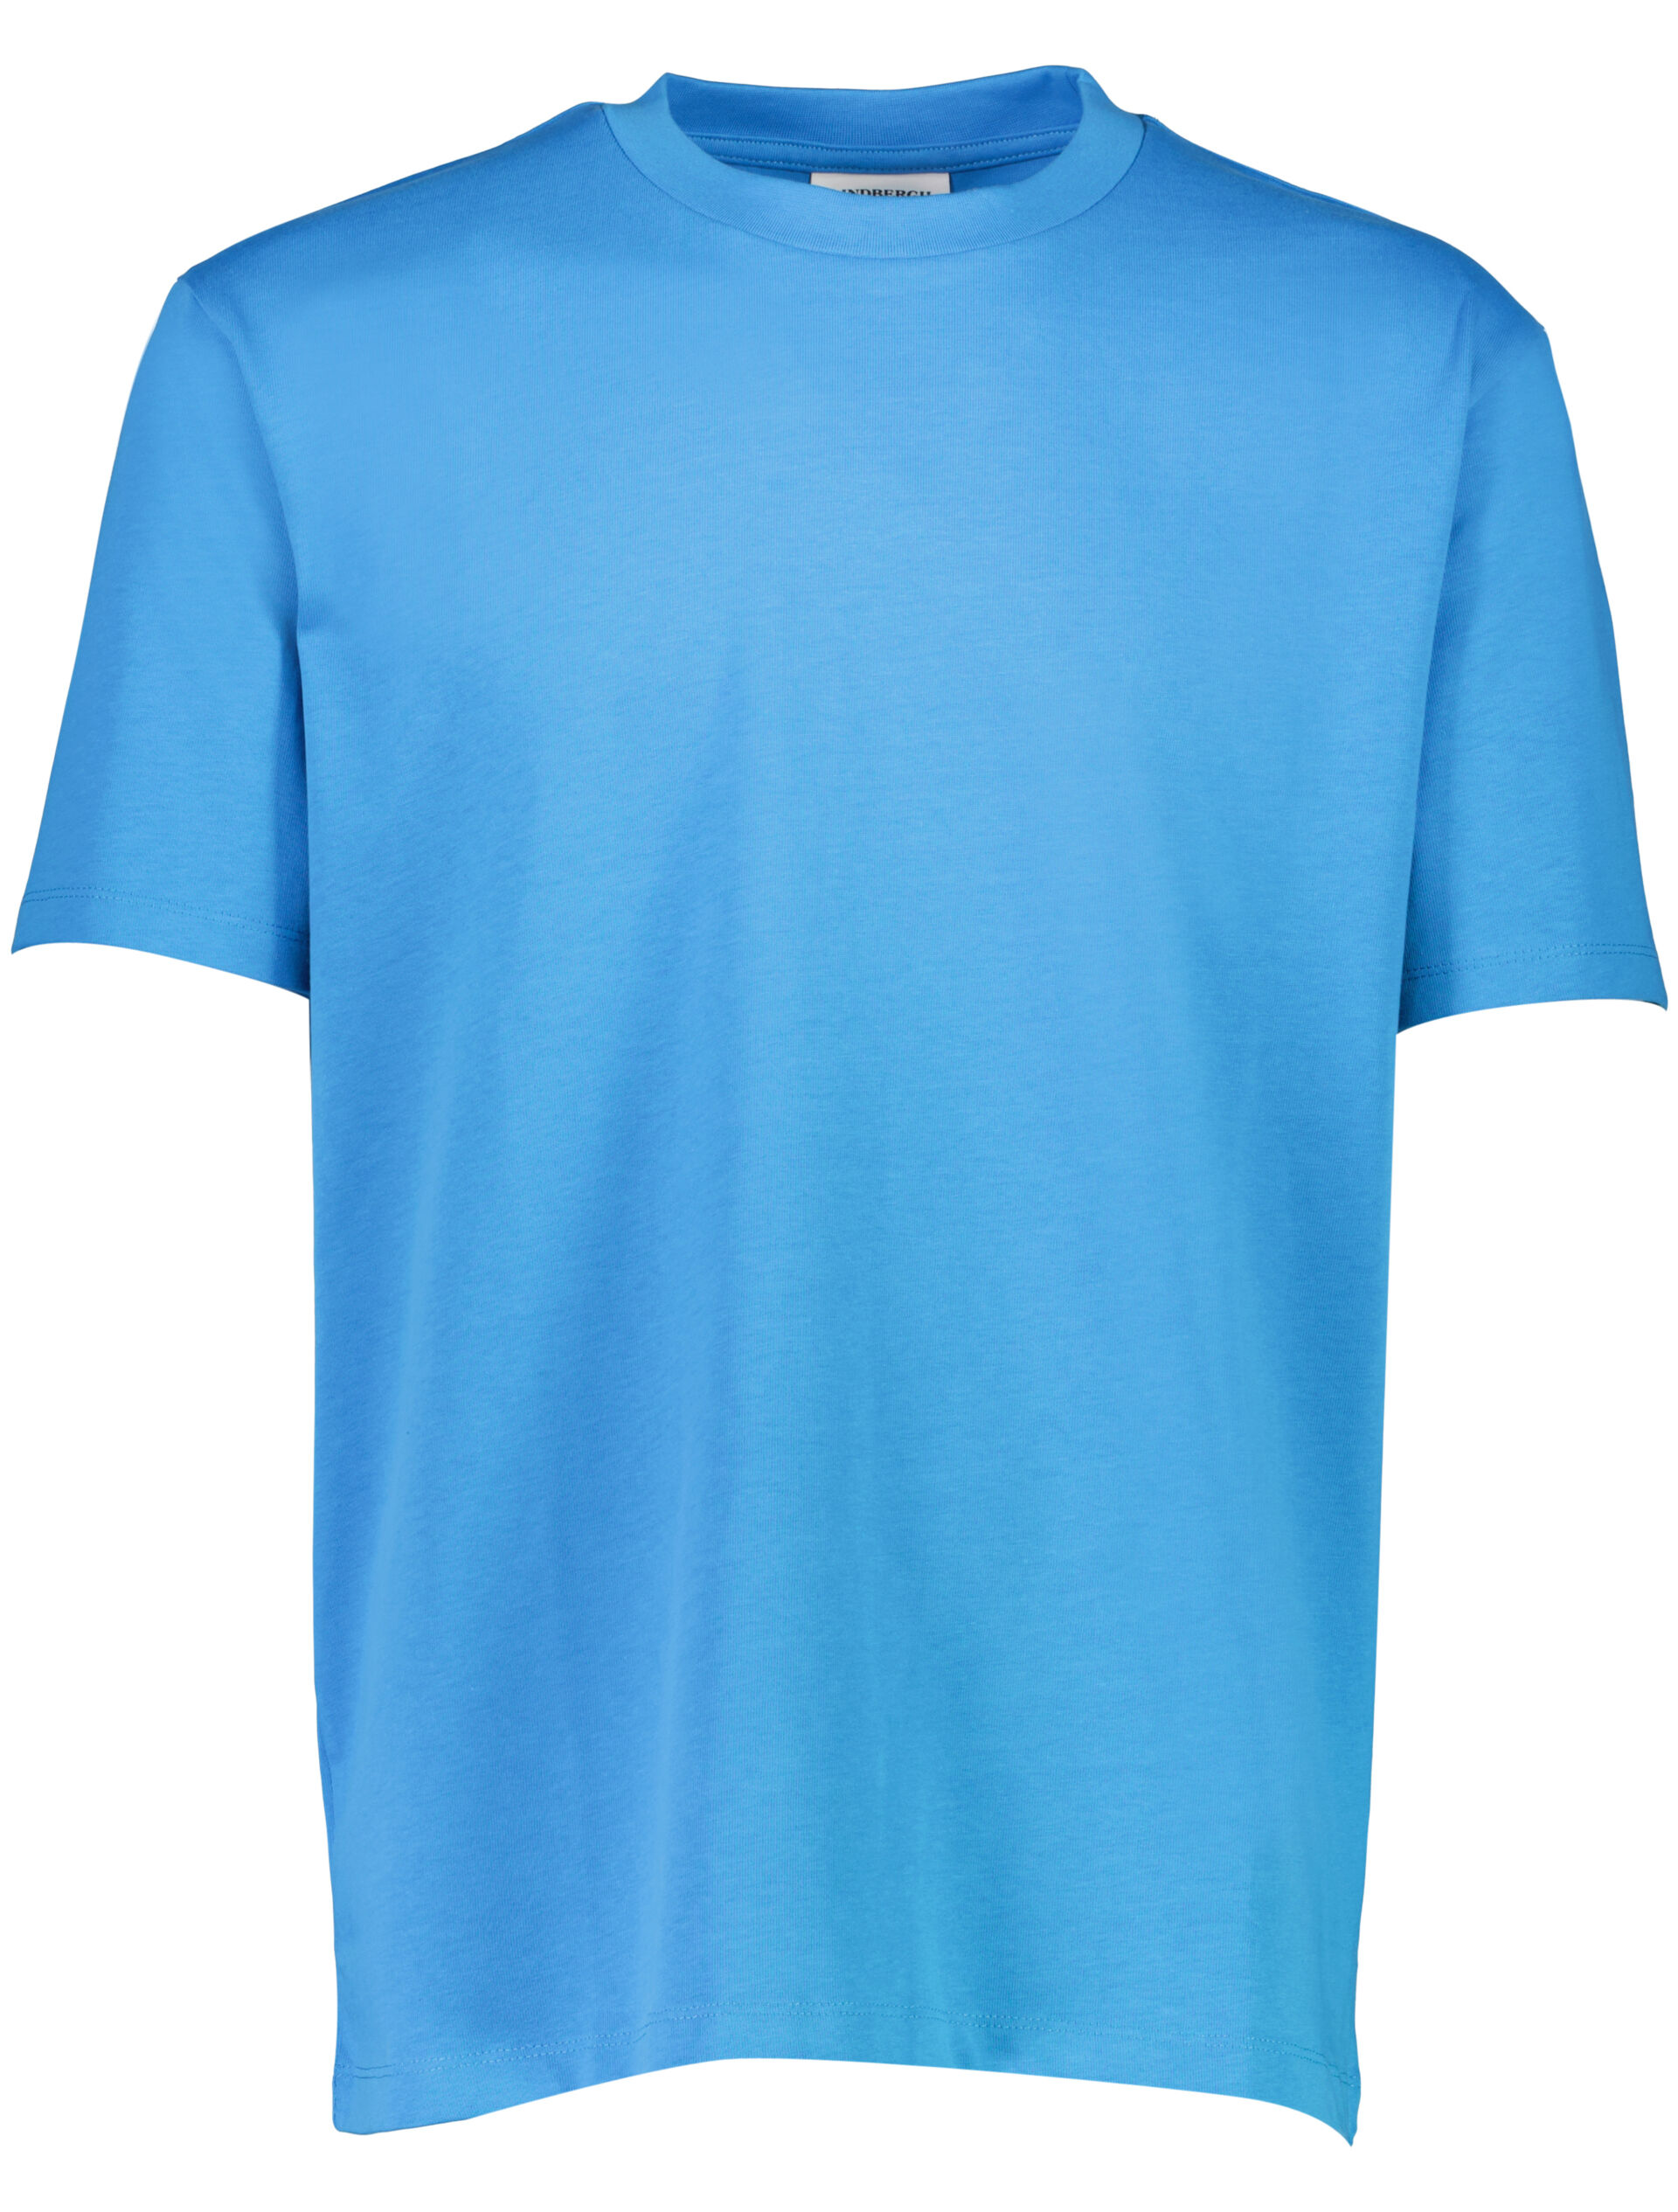 T-shirt T-shirt Blau 30-400120